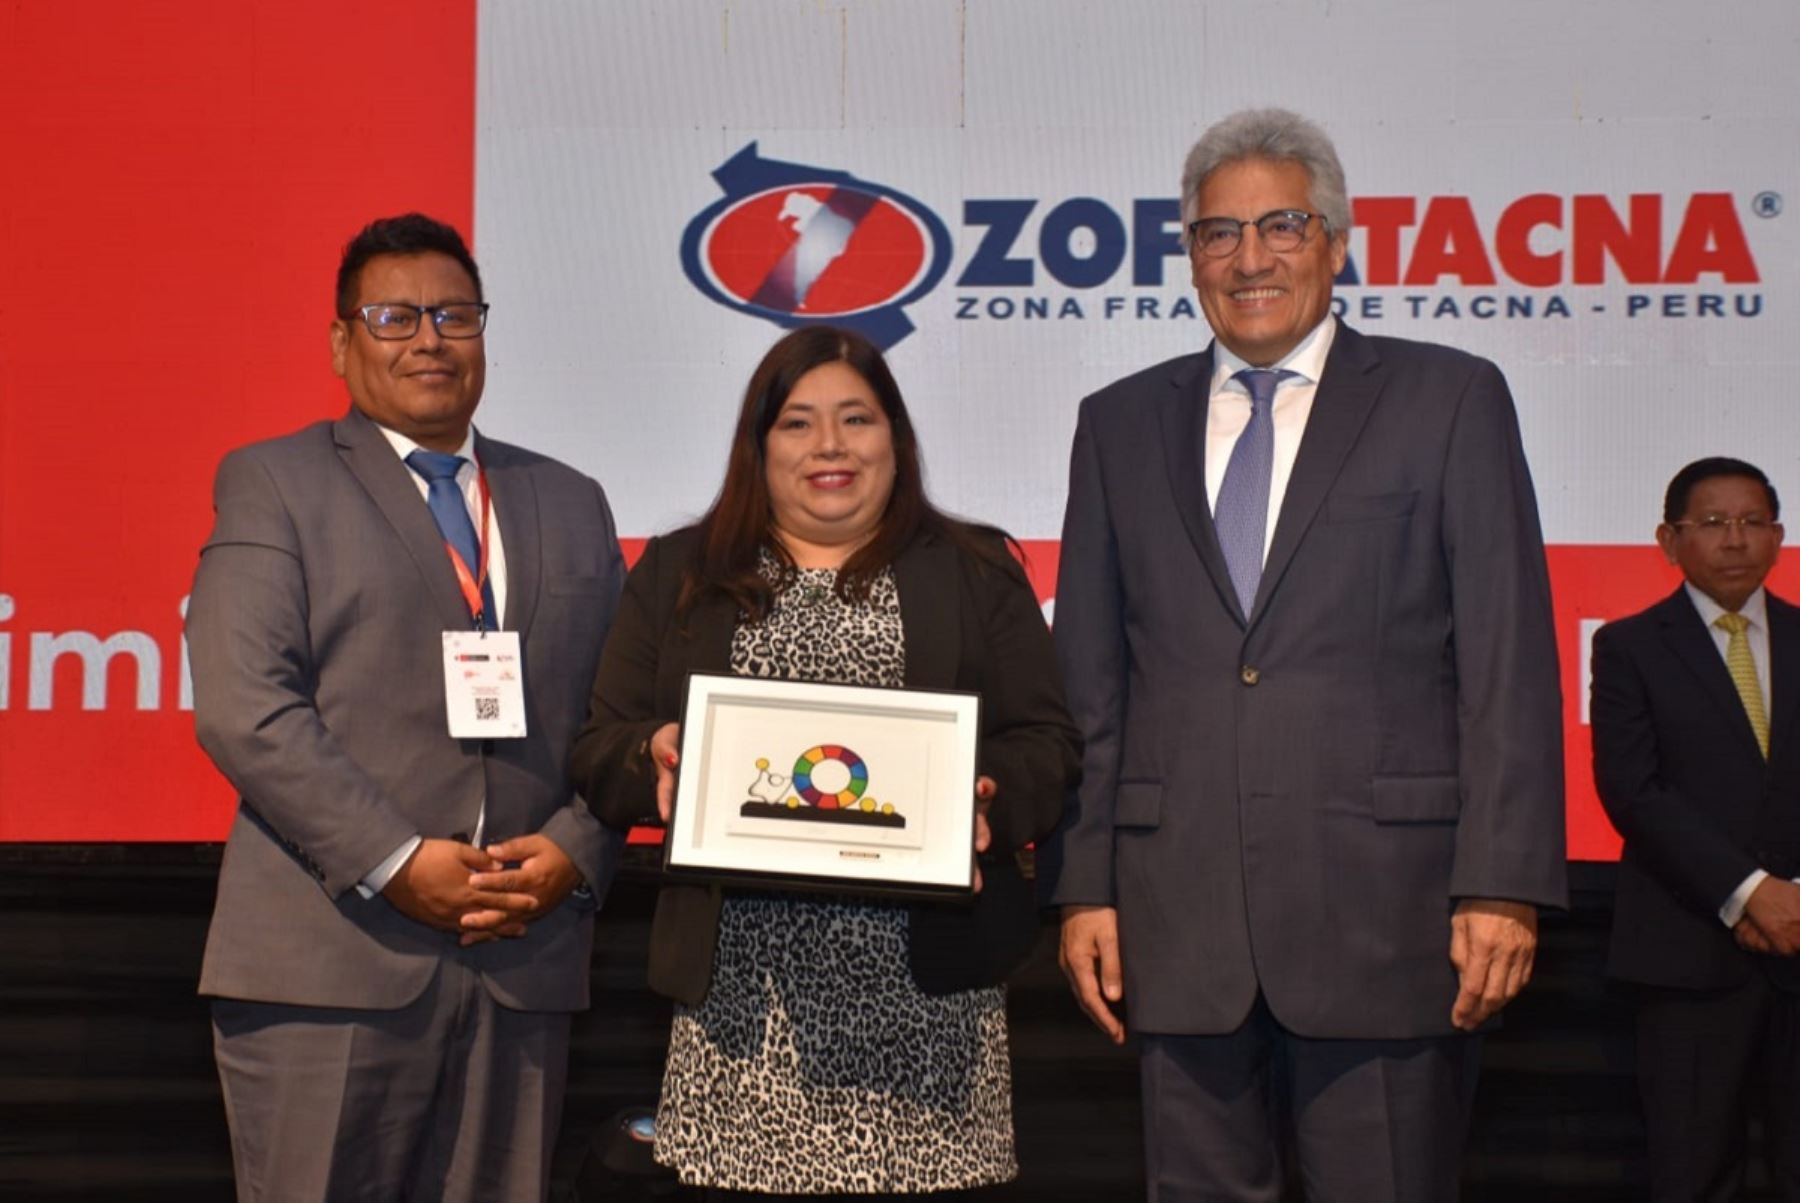 Directora de Zofratacna, Claudia Parra, recibe el reconocimiento Perú Exporta Servicios de Promperú. Foto: Cortesía.